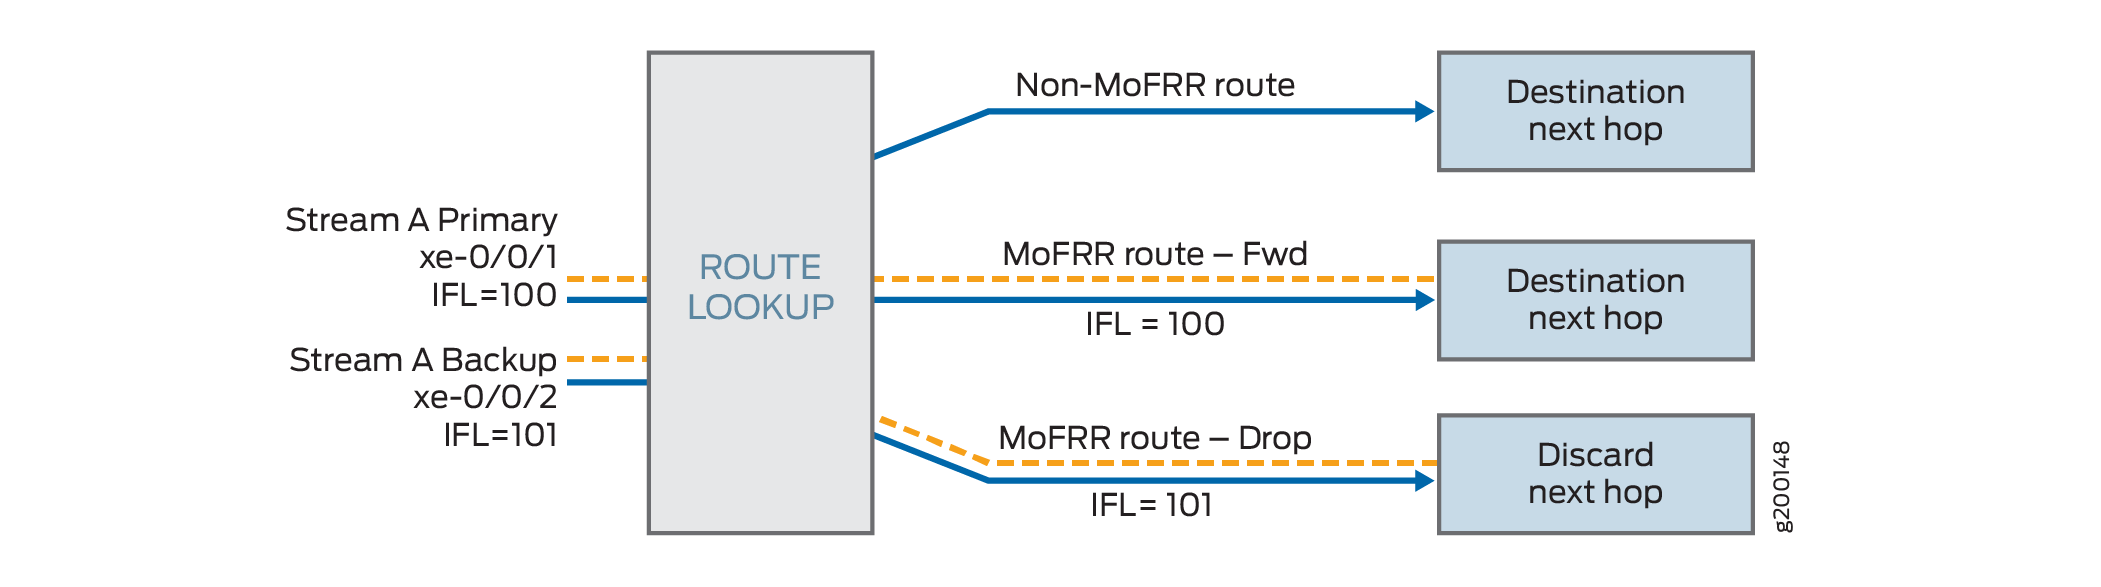 Manejo de rutas de IP MoFRR en el motor de reenvío de paquetes en conmutadores